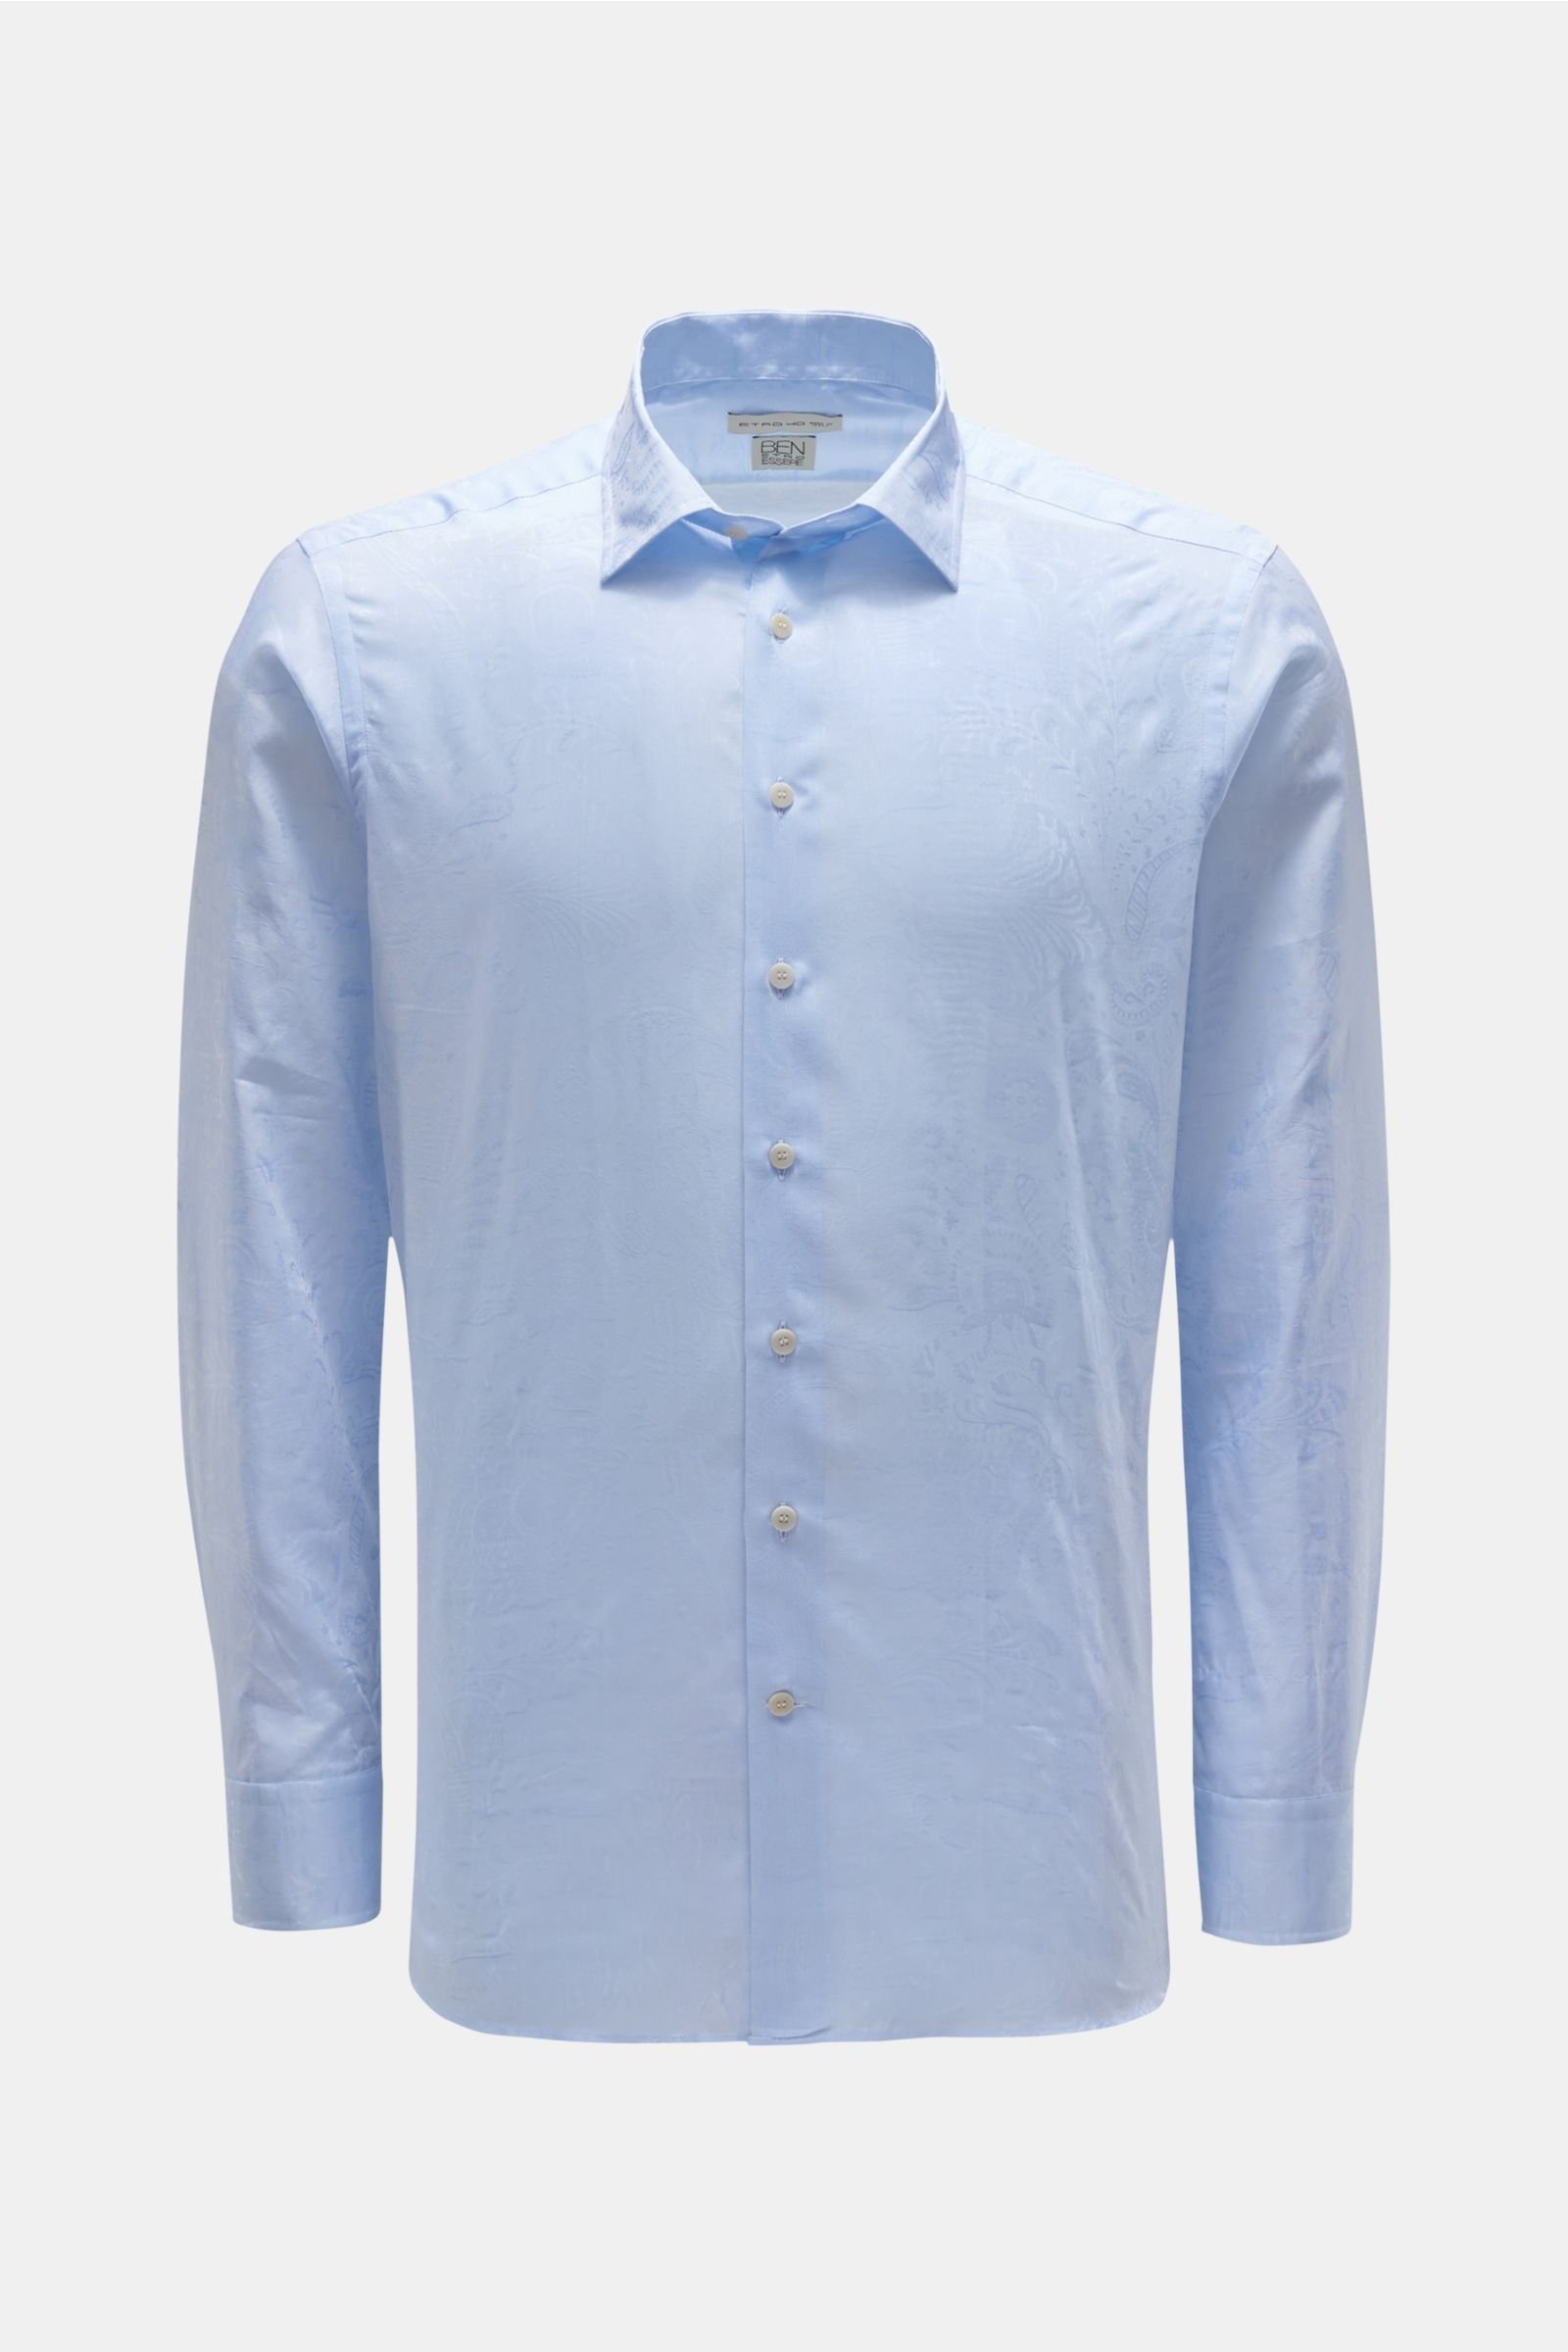 Jacquard-Hemd schmaler Kragen pastellblau gemustert